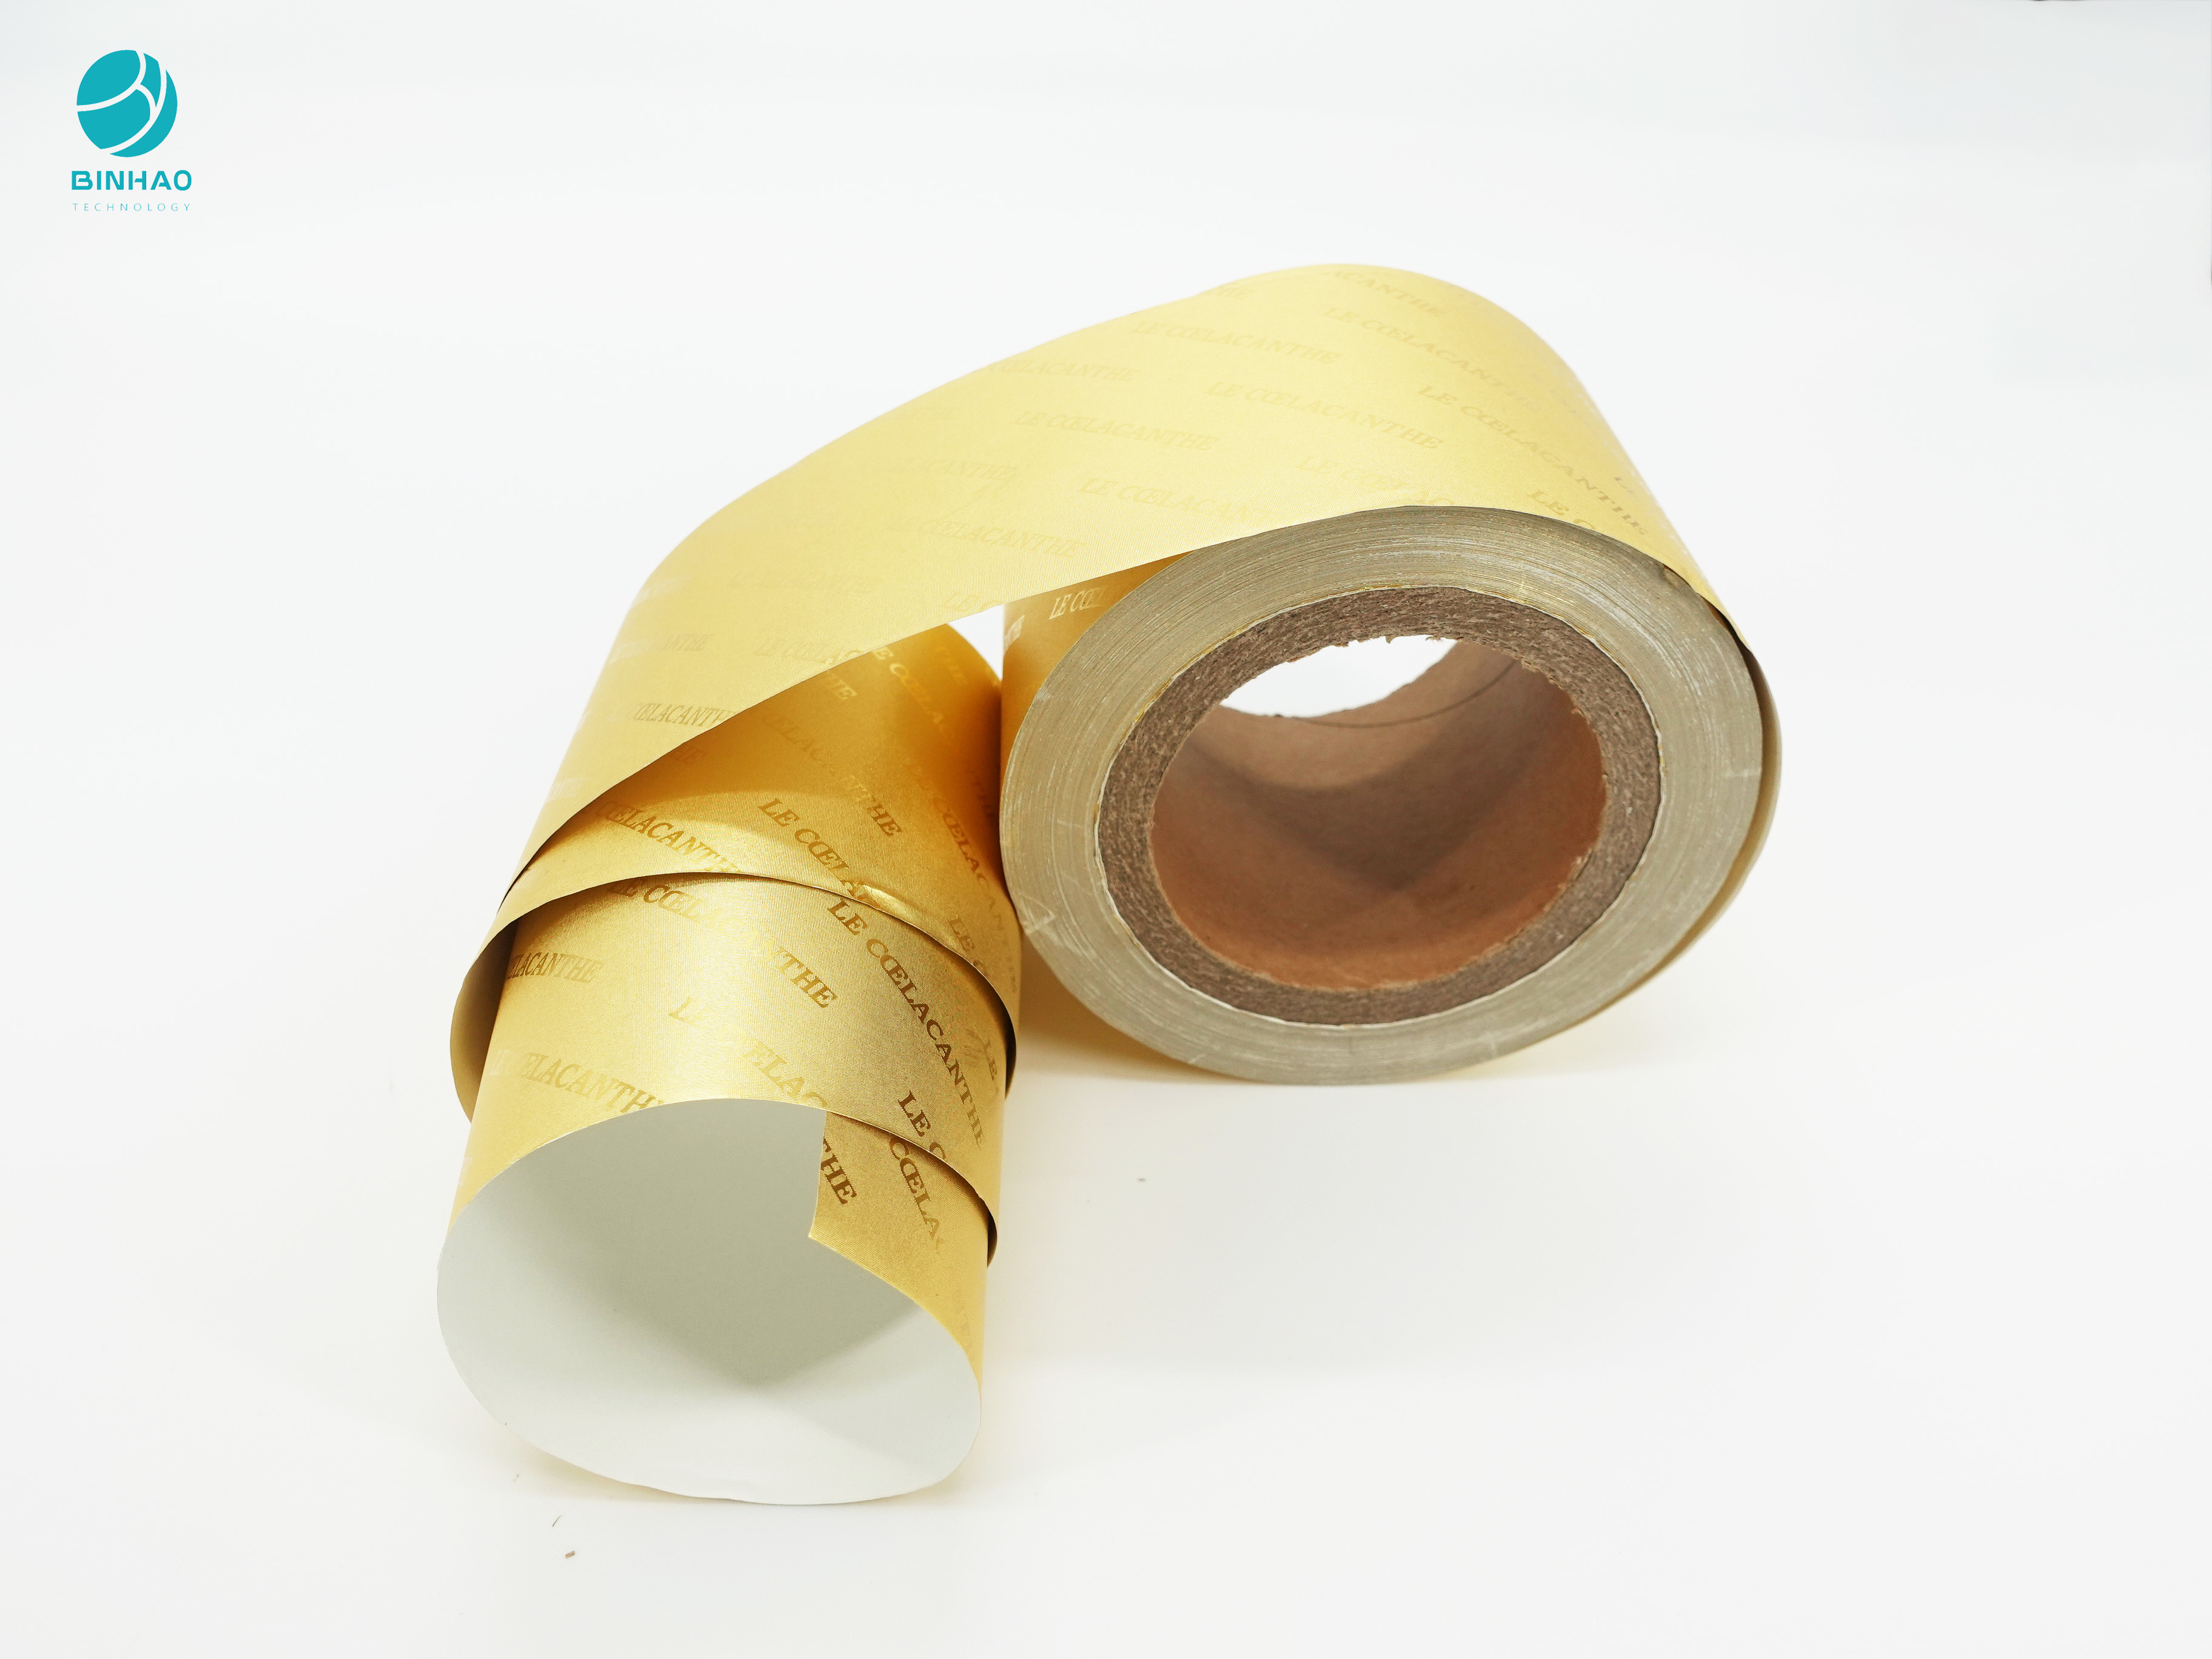 담배 속포장을 위한 금빛 8011 알루미늄 포일지를 엠보싱 처리하기